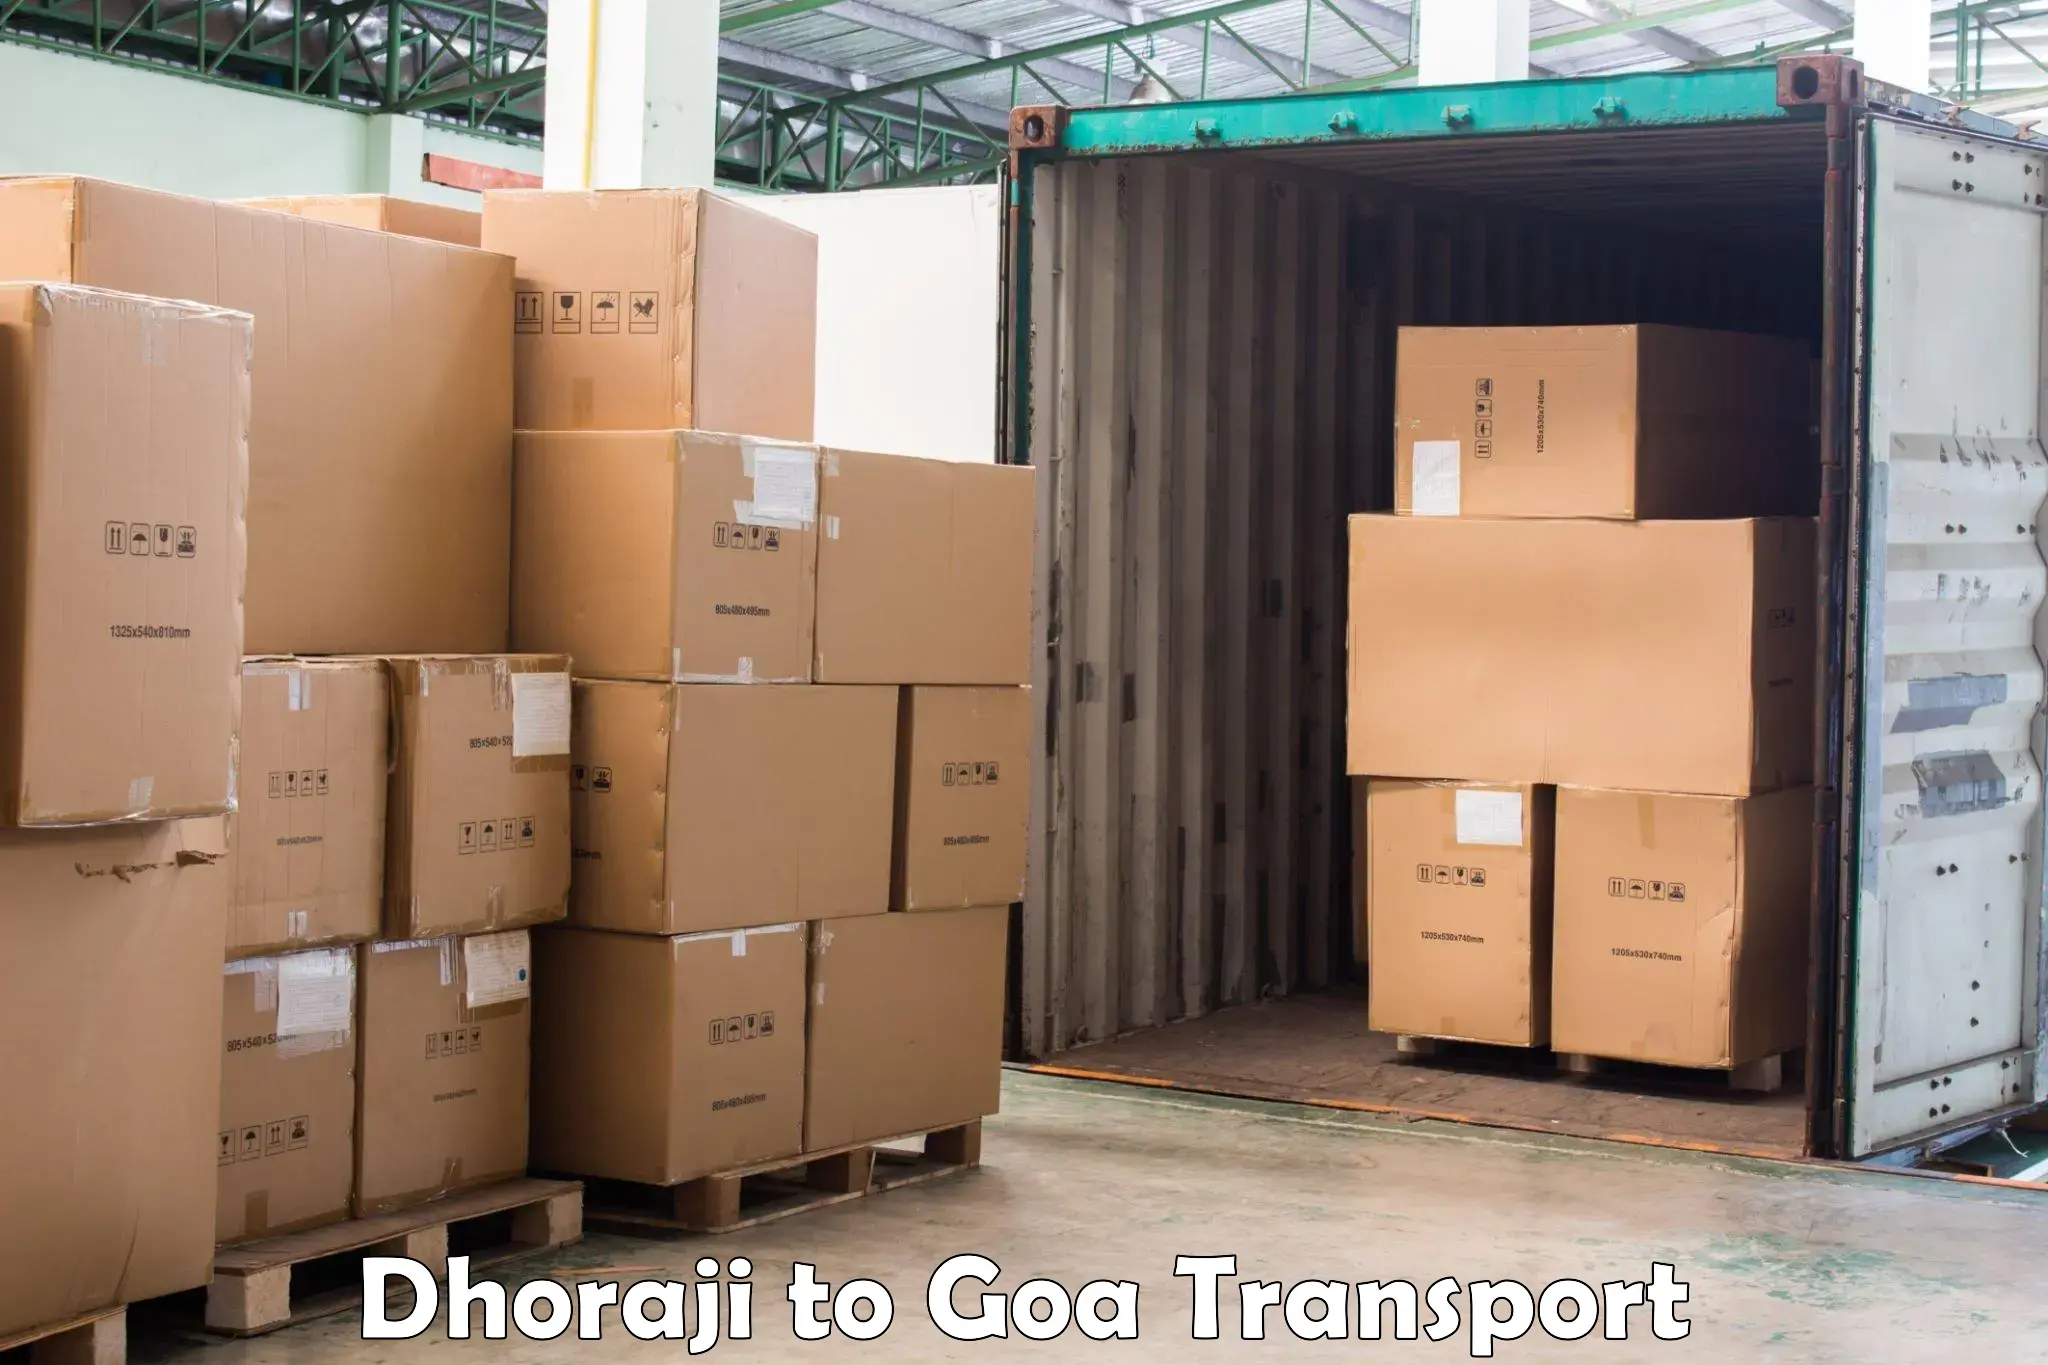 Daily transport service Dhoraji to Sanvordem